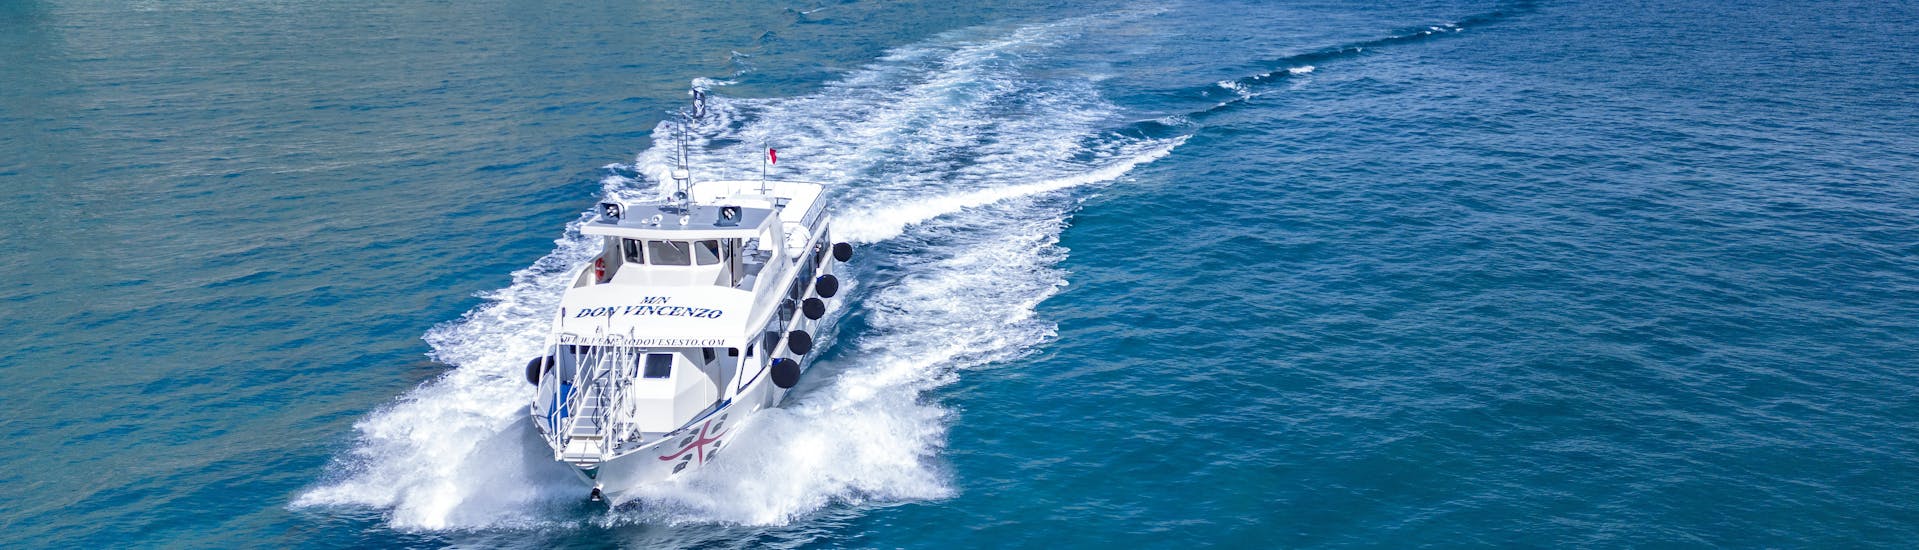 Le bateau navigue dans le golfe pendant l'excursion en bateau dans le golfe d'Orosei avec Dovesesto Cala Gonone.